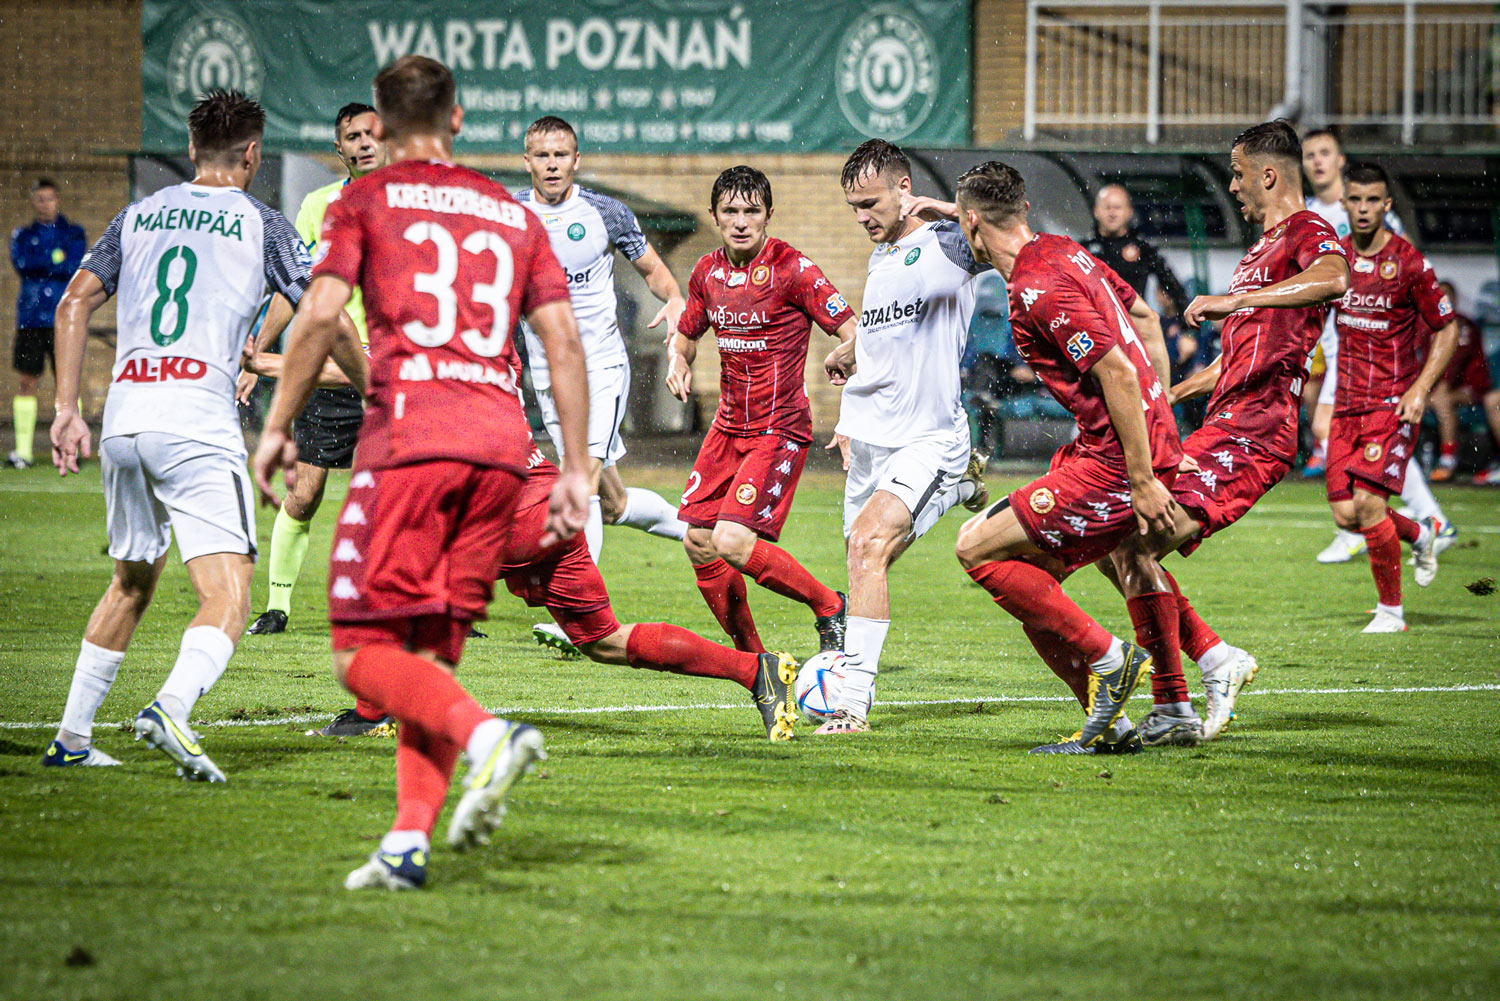 Warta Poznań - Widzew Łódź 0:1. Skrót meczu, wideo